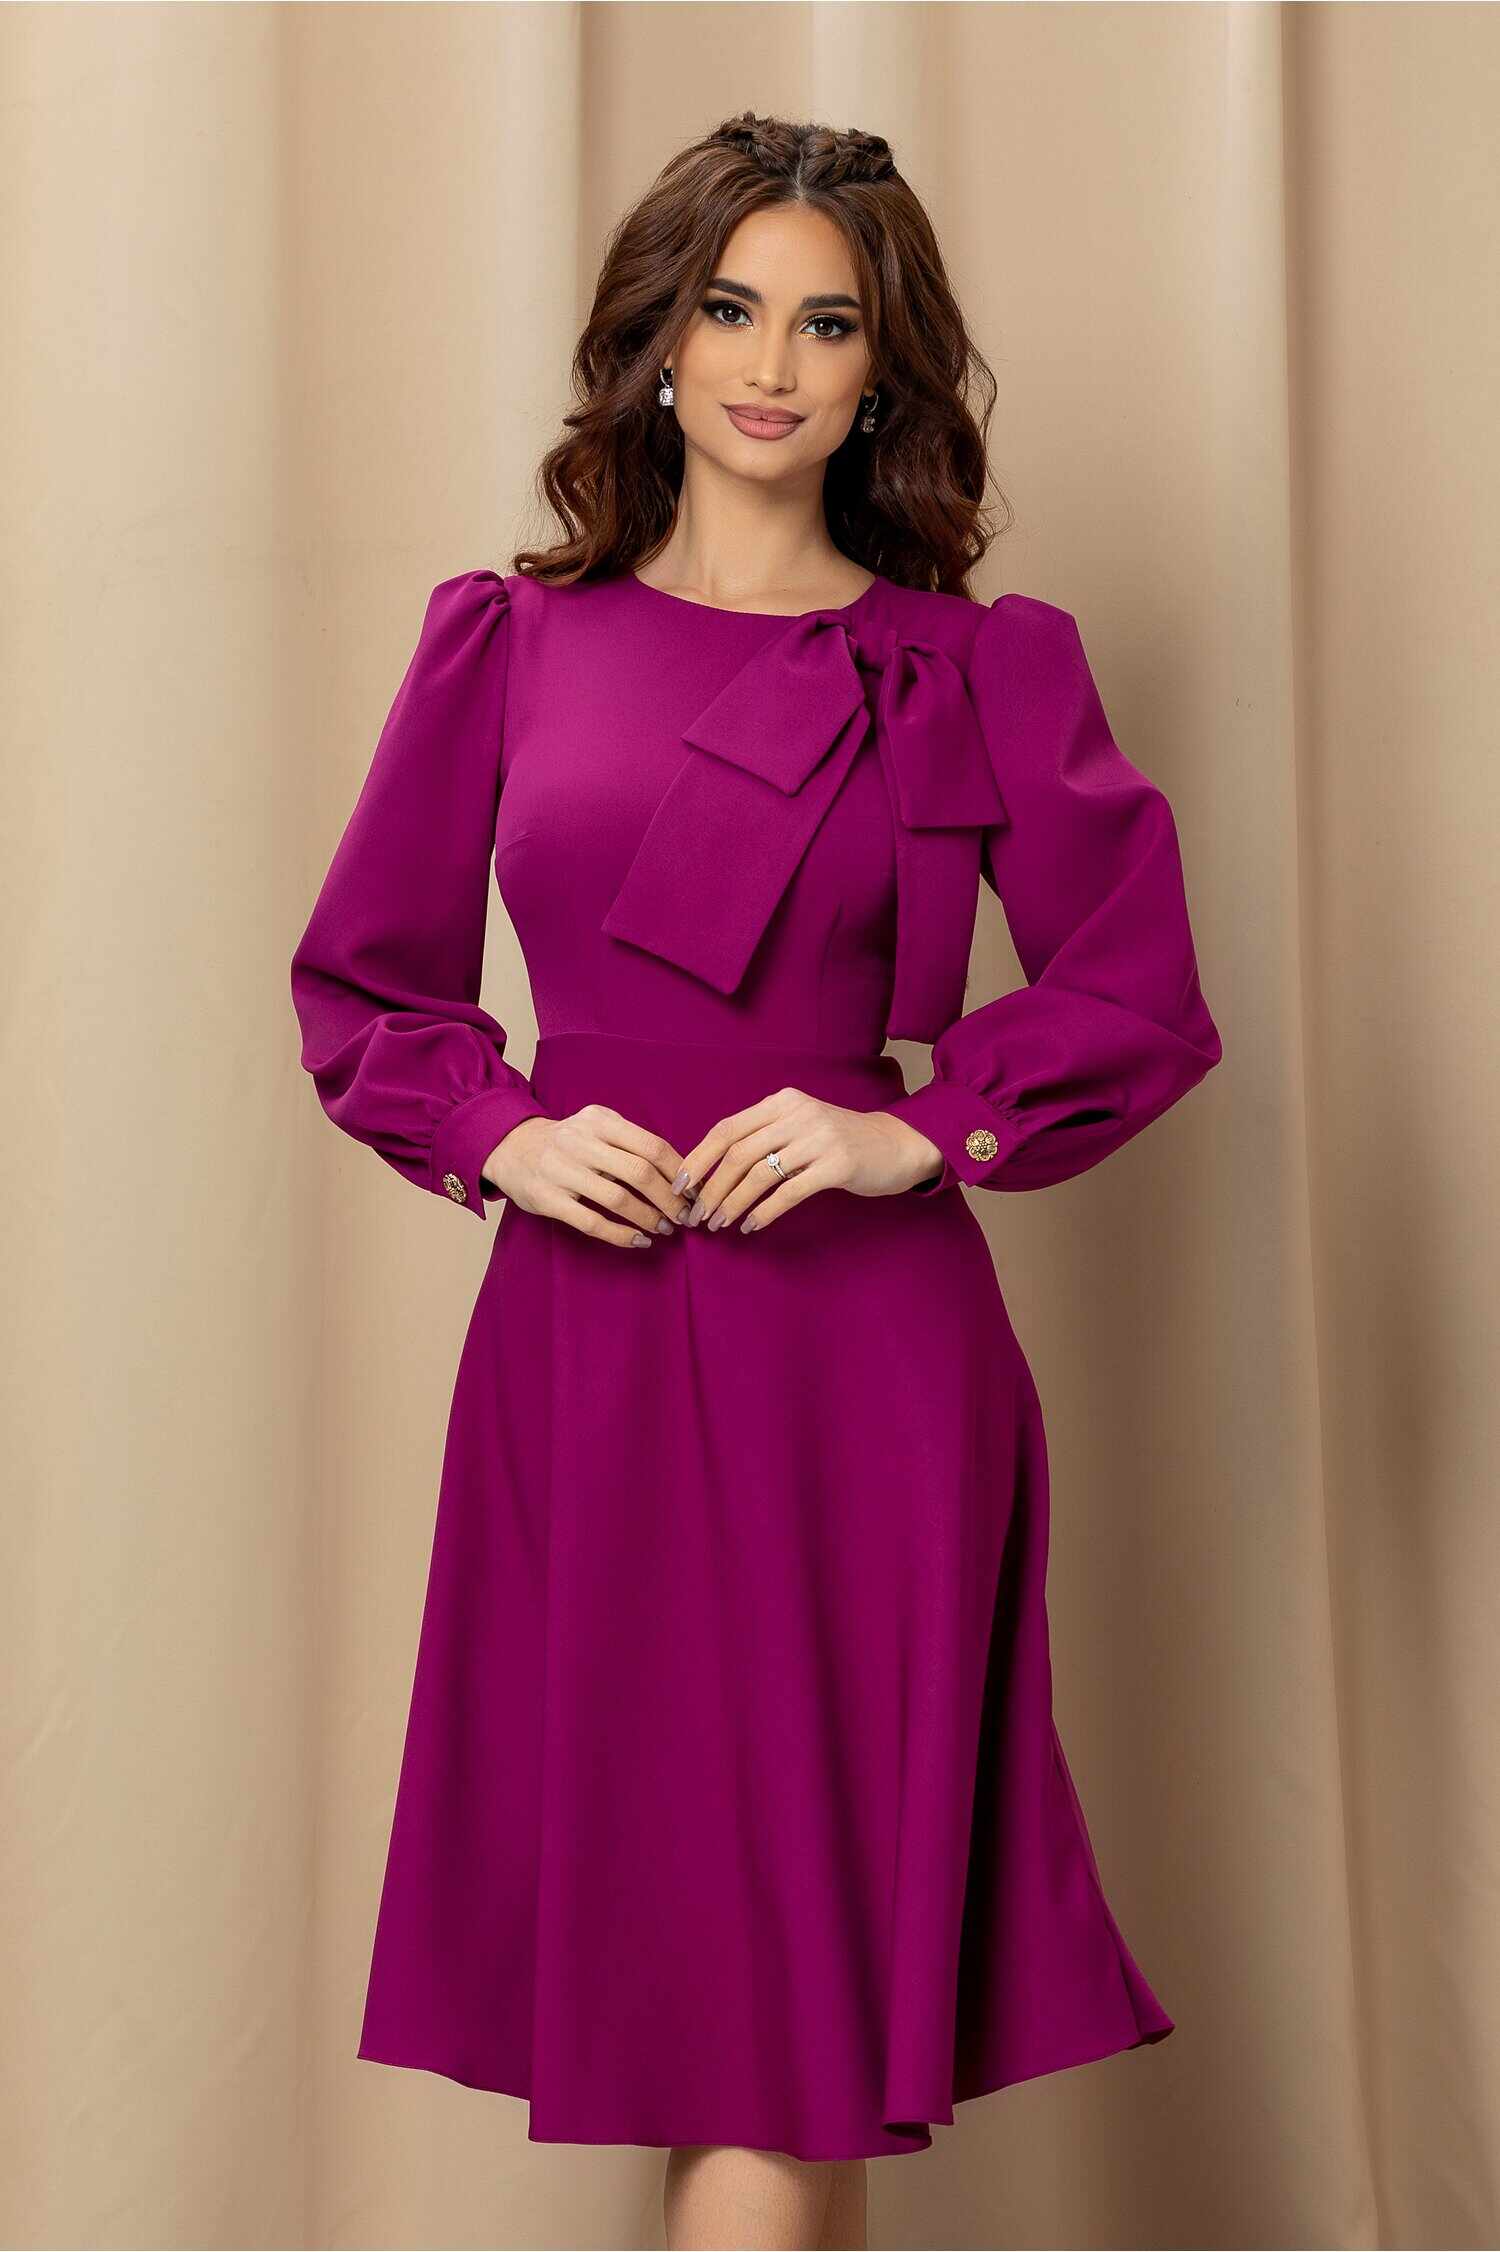 Rochie Dy Fashion violet cu fundita la bust